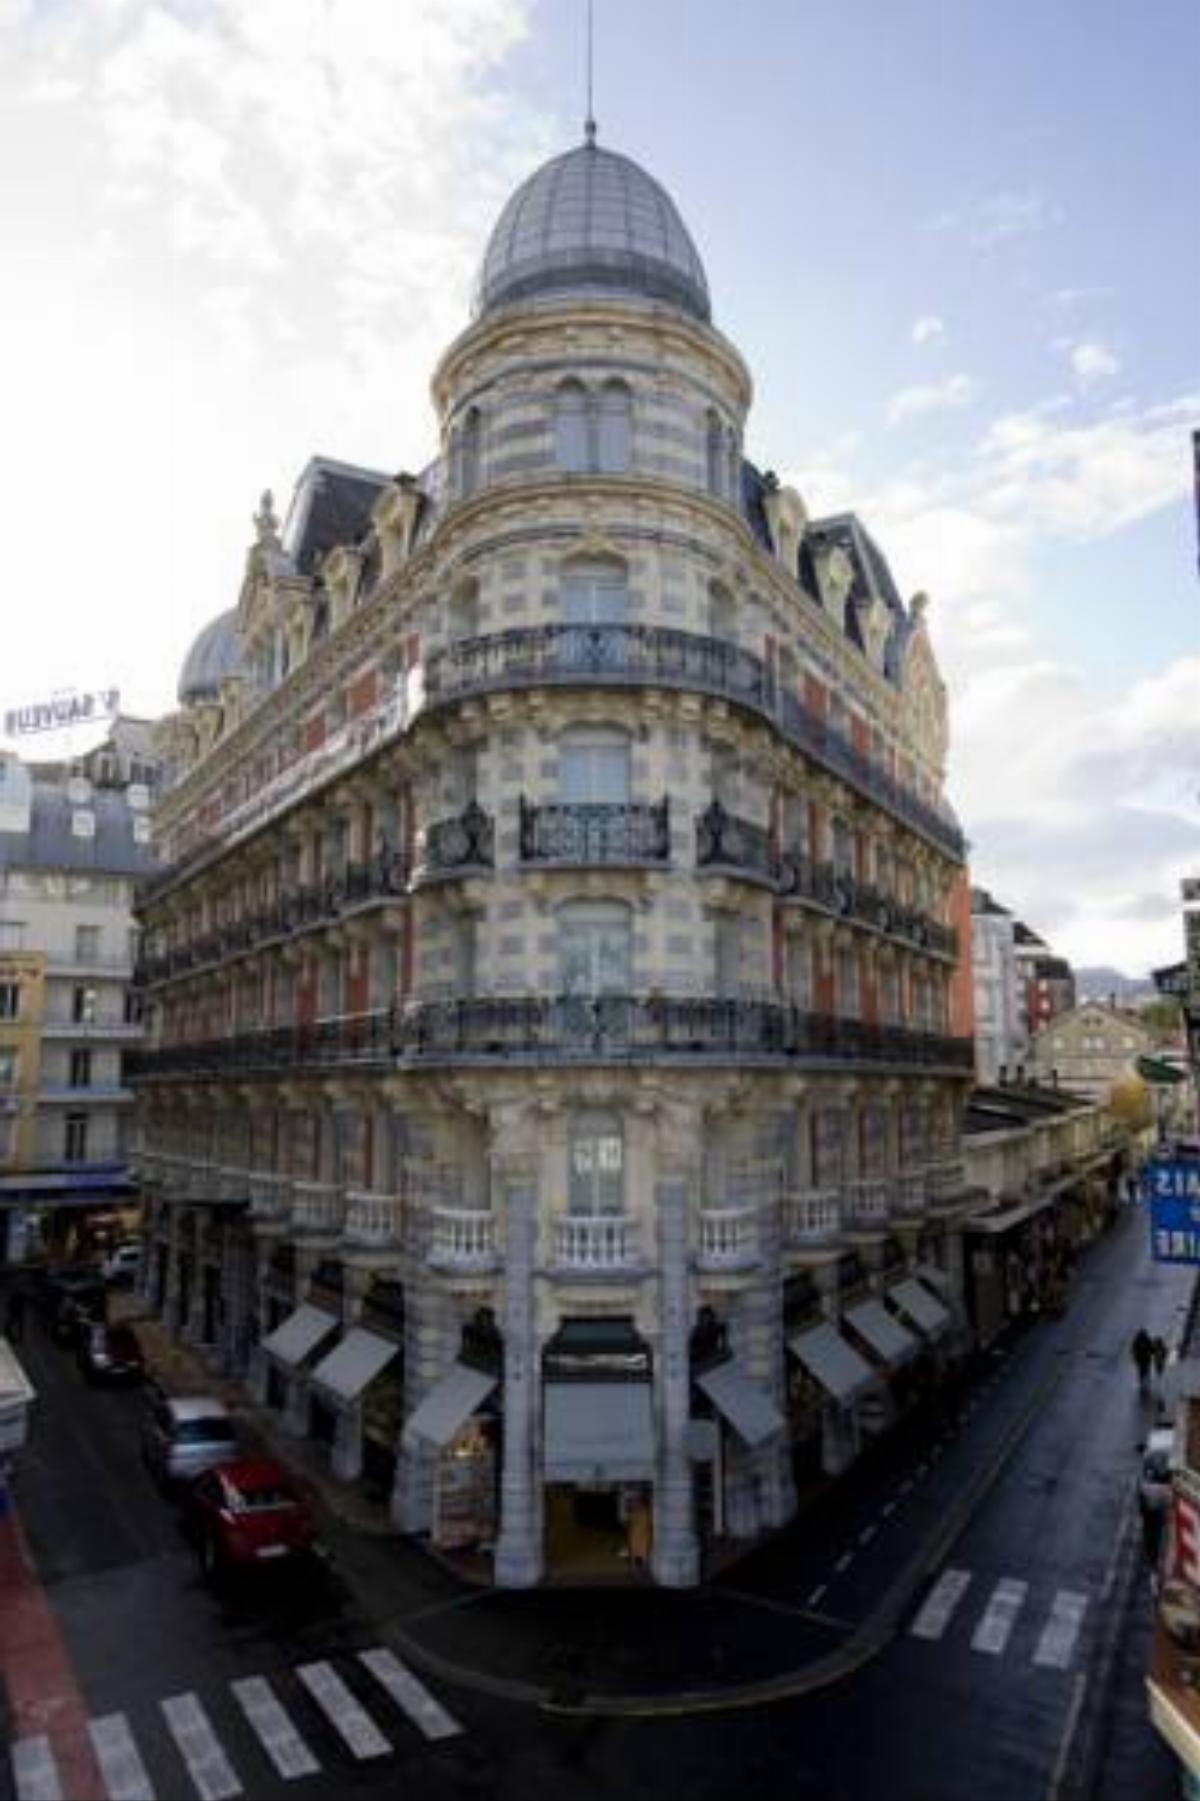 Grand Hôtel Moderne Hotel Lourdes France